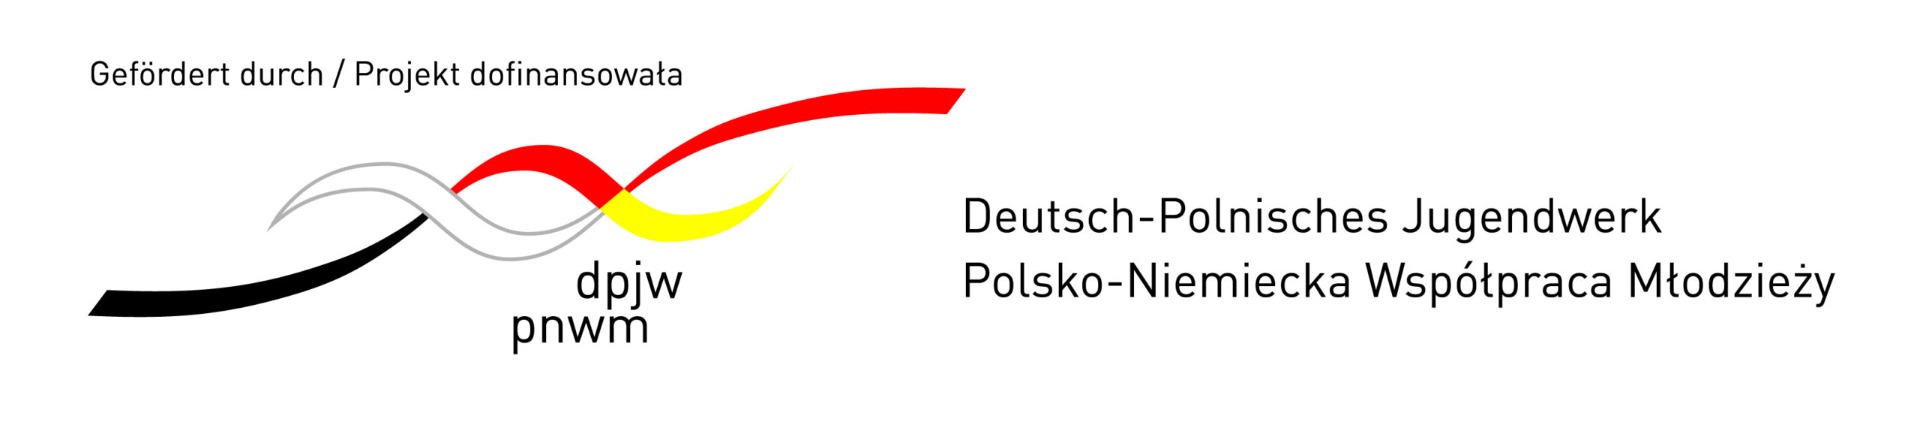 Polsko-Niemiecka Wymiana Uczniów - Obrazek 1